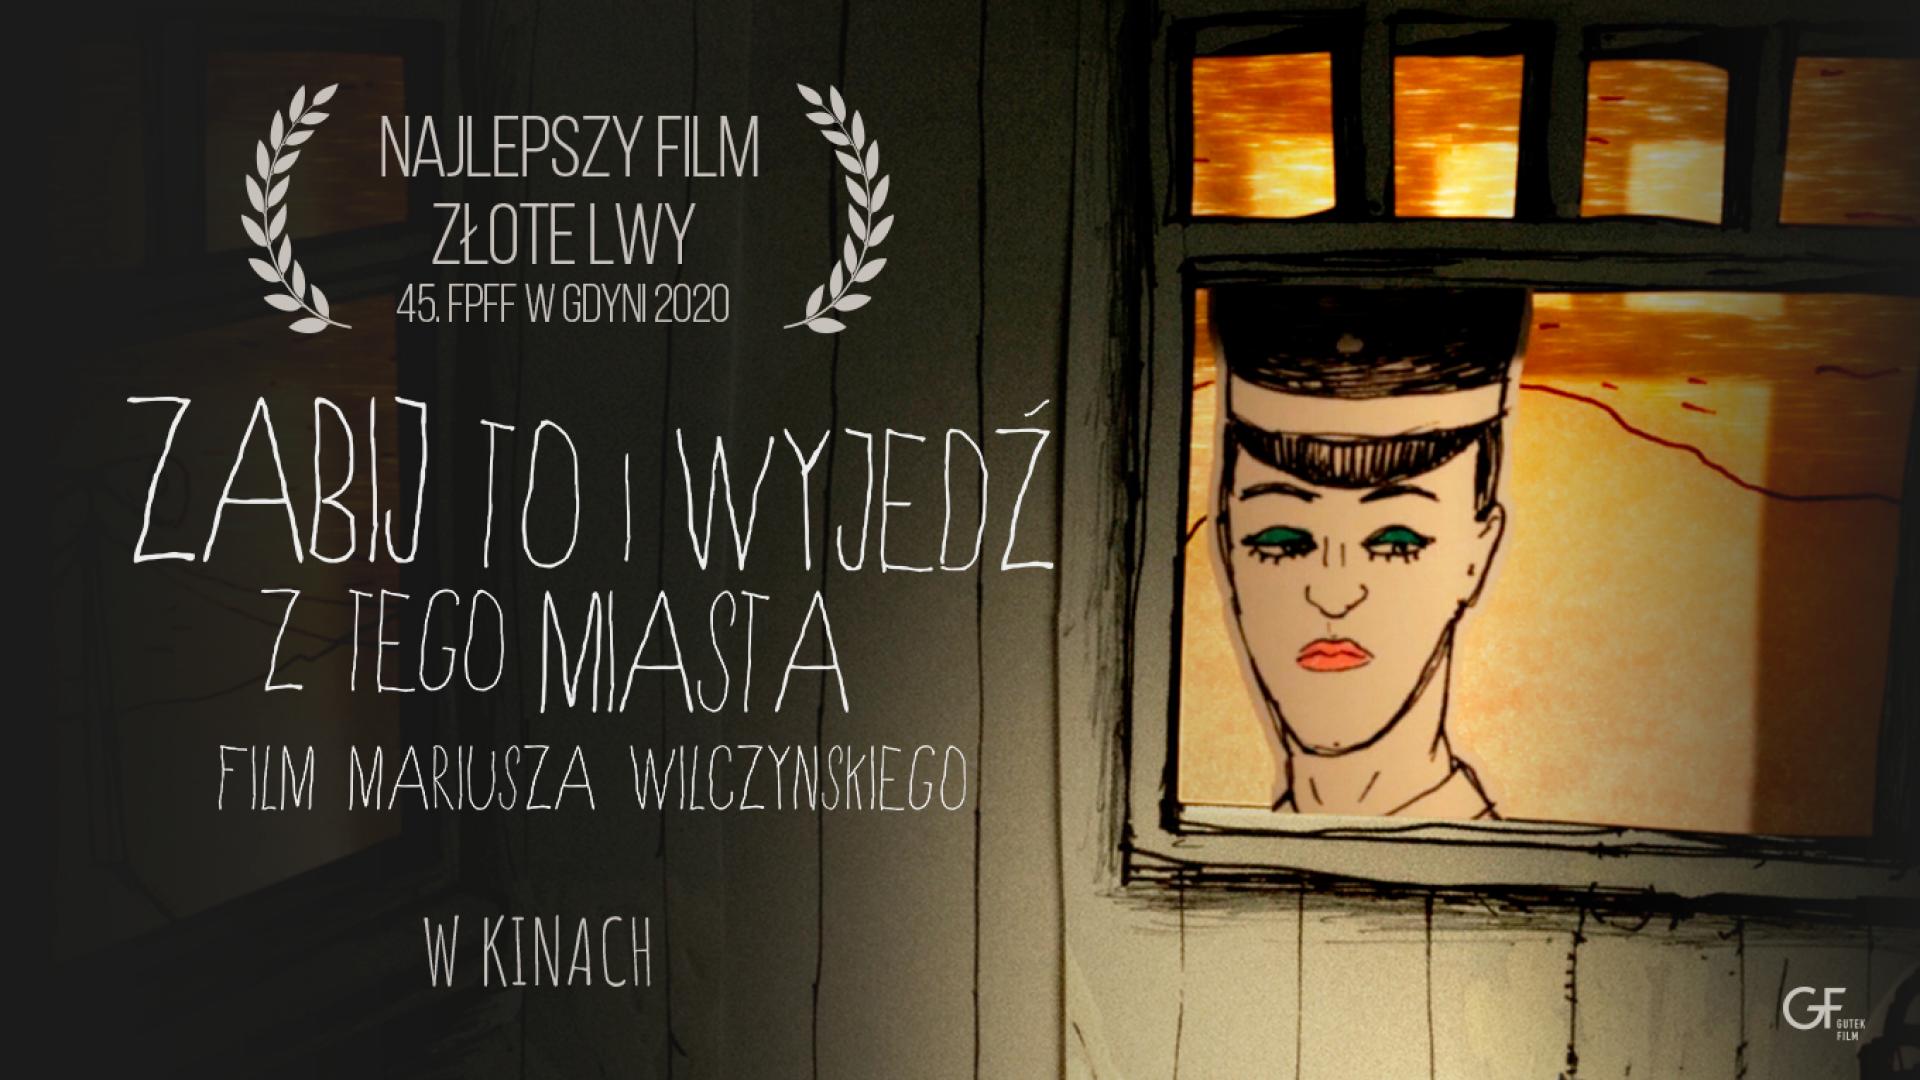 aIlustracja promująca film „Zabij to i wyjedź z tego miasta”, zawierająca u góry hasło „Najlepszy Film Złote Lwy 45. FPFF w Gdyni 2022”, poniżej tytuł filmu oraz napis: „film Mariusza Wilczynskiego w kinach”